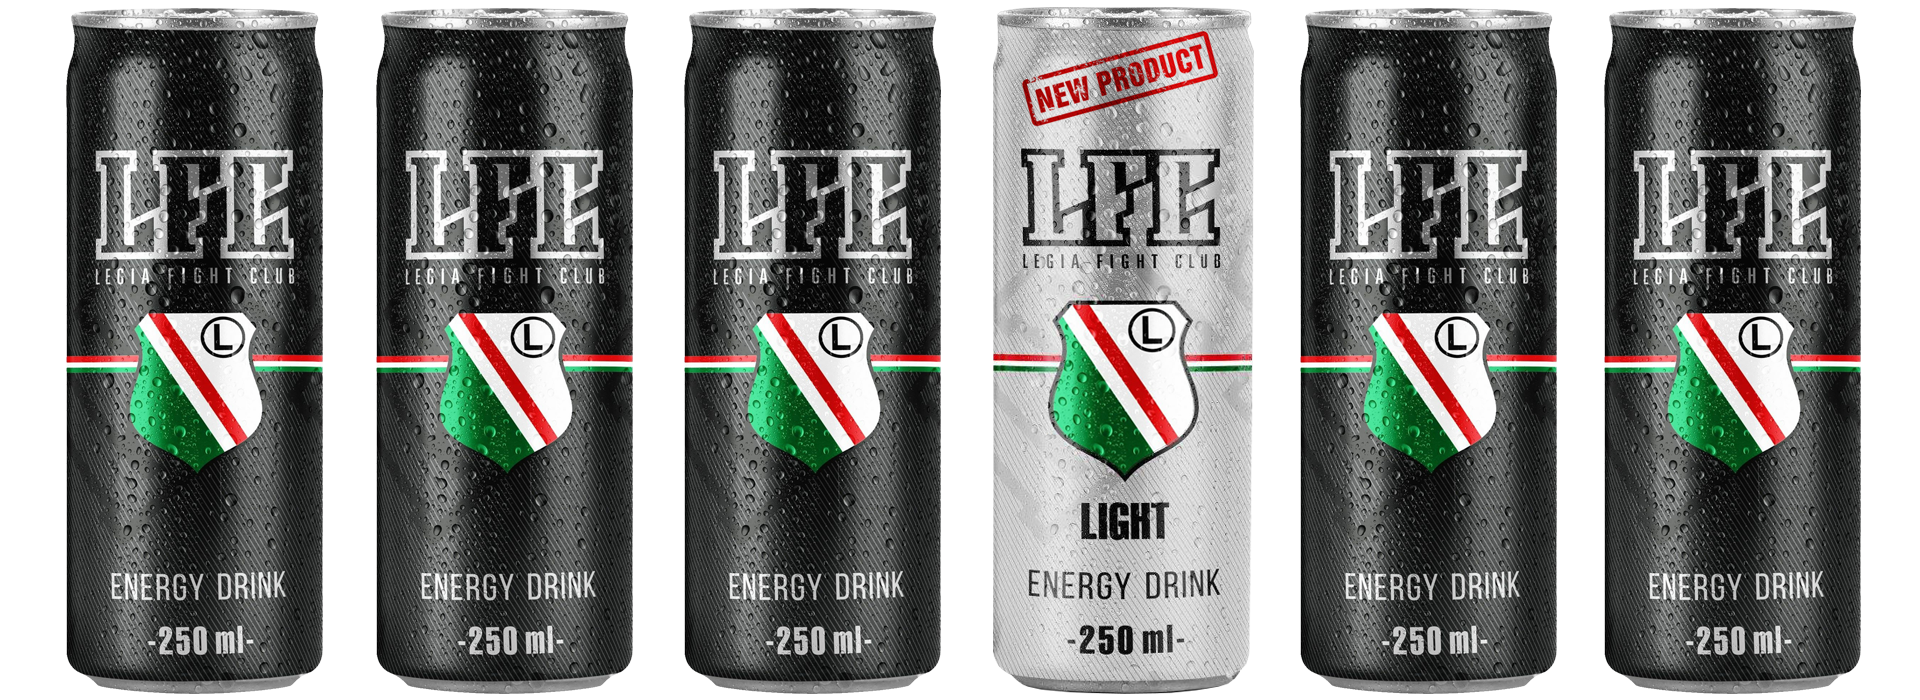 Legia Fight Club Energy Drink